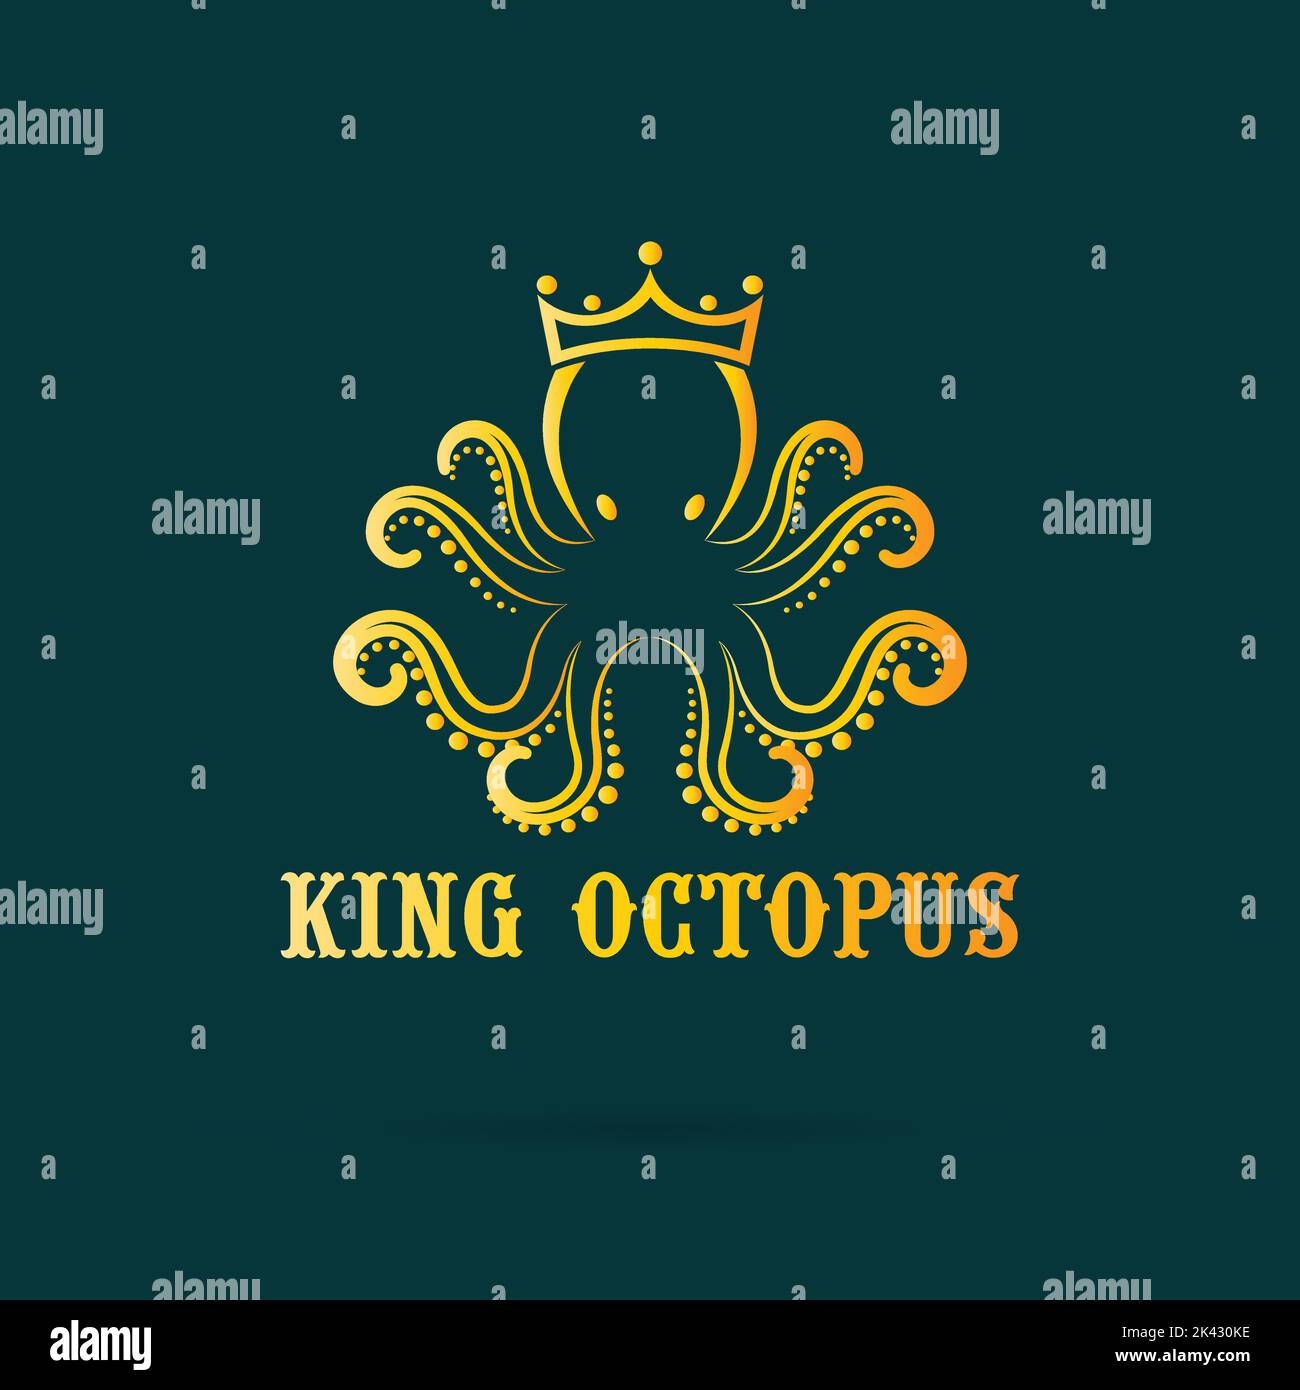 Vector de un pulpo Llevar una corona sobre fondo azul oscuro. Animal marino. Logotipo o icono de King Octopus, fácil de editar. Ilustración de vectores en capas. Ilustración del Vector